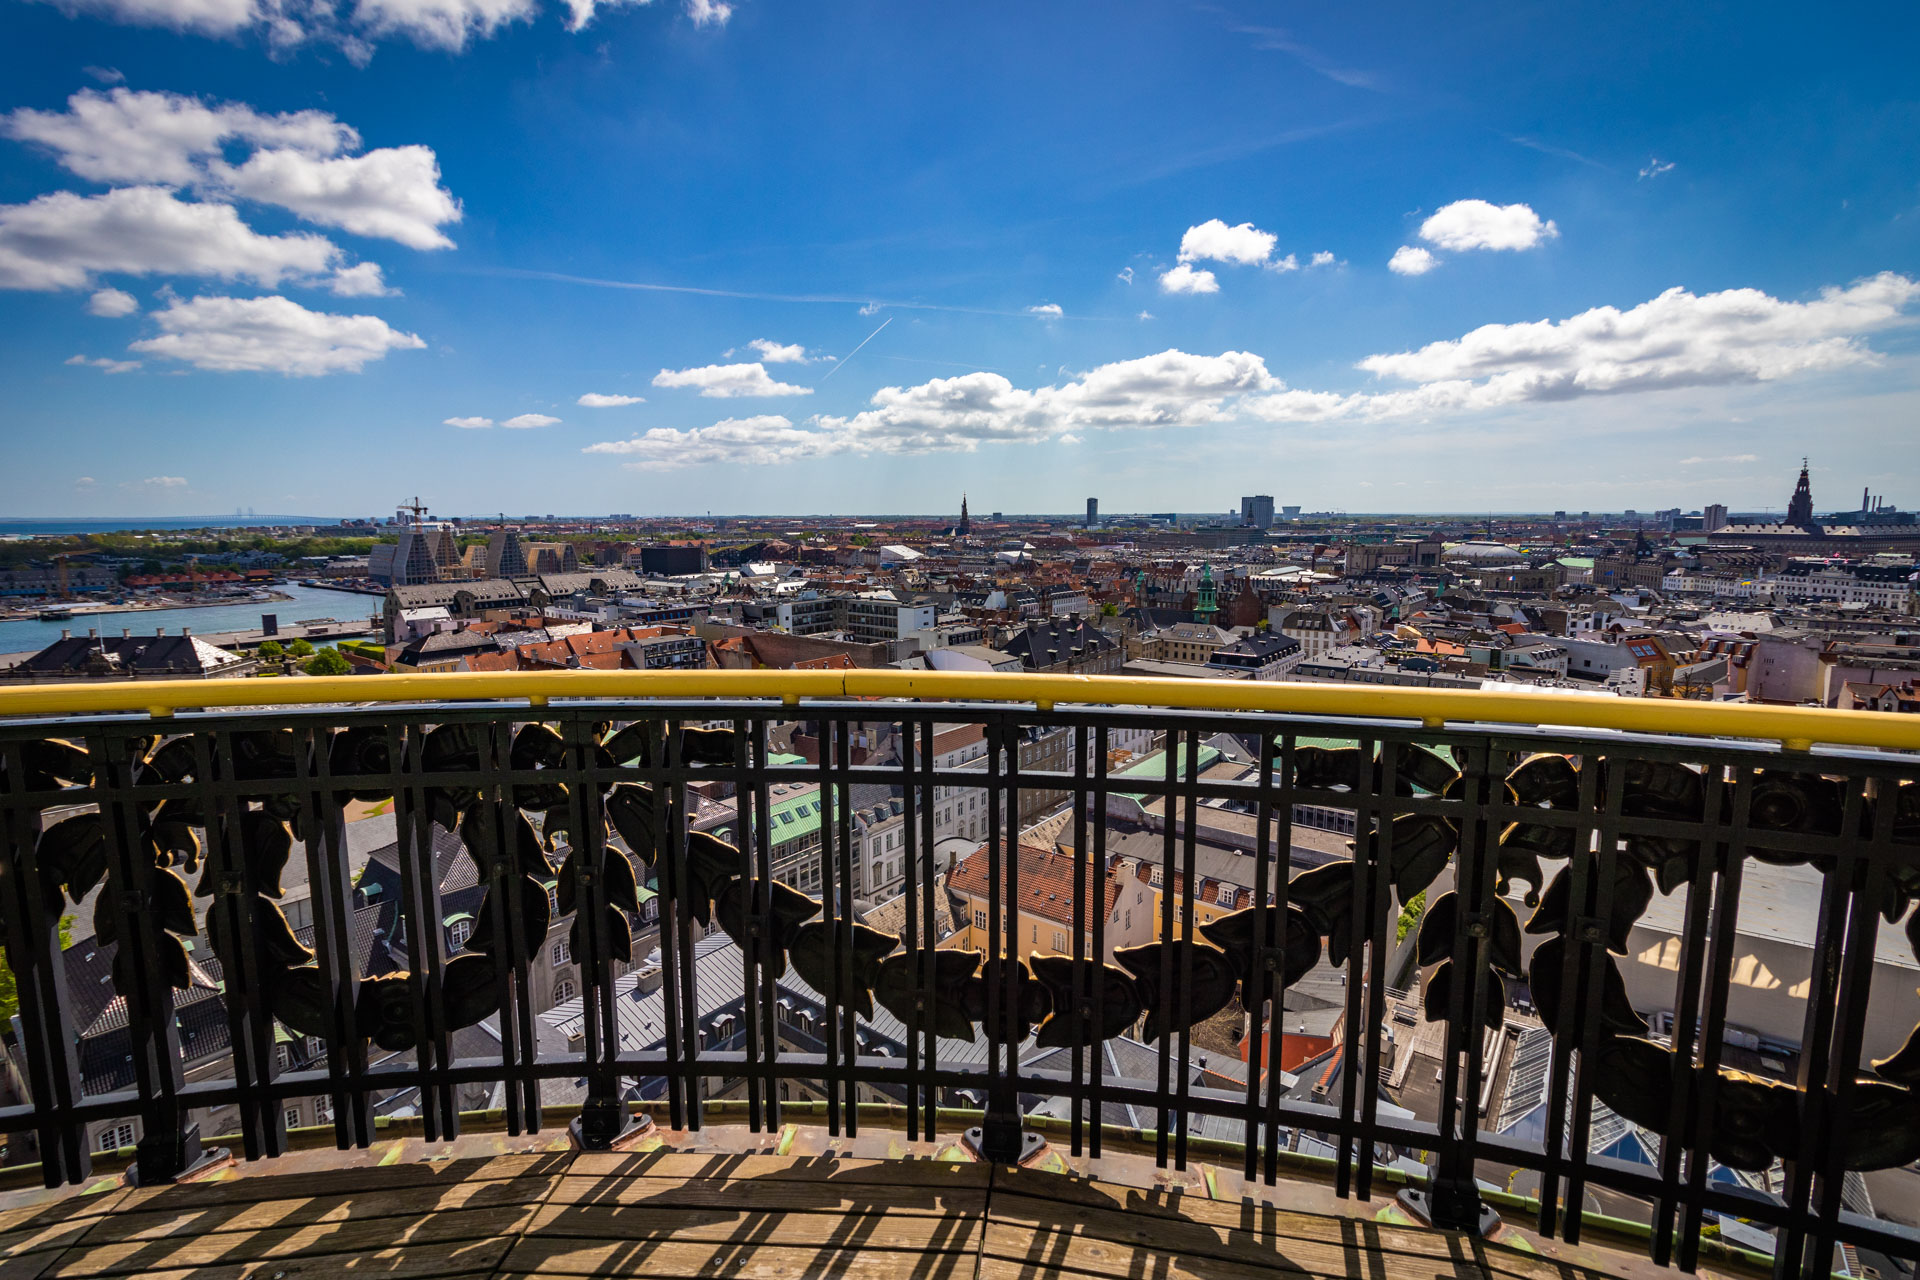 Uitzicht over Kopenhagen met ervoor het balkon van de Marmorkirken in Kopenhagen